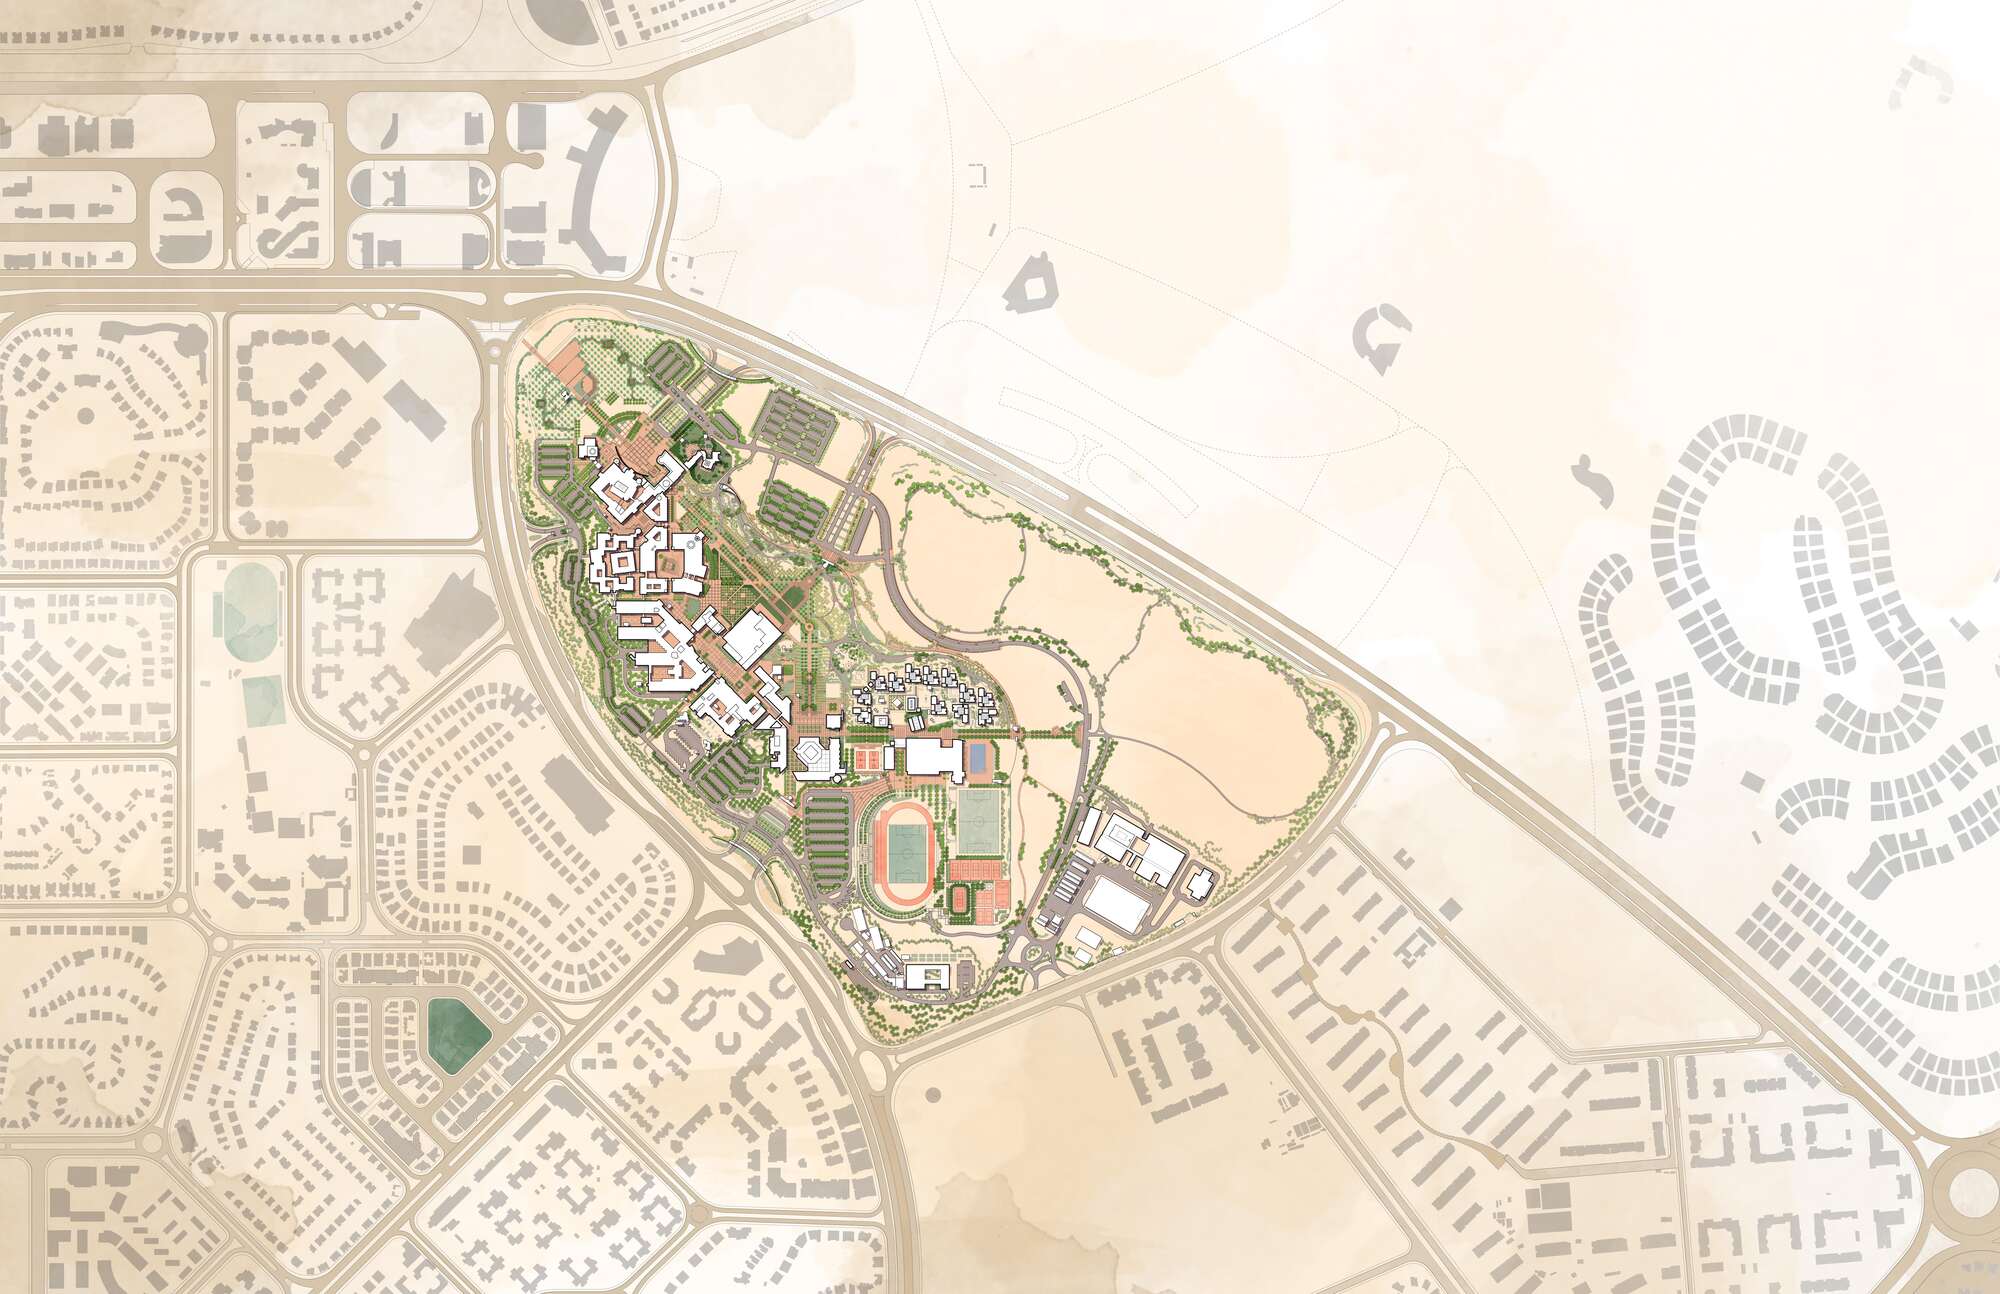 AUC campus plan illustration